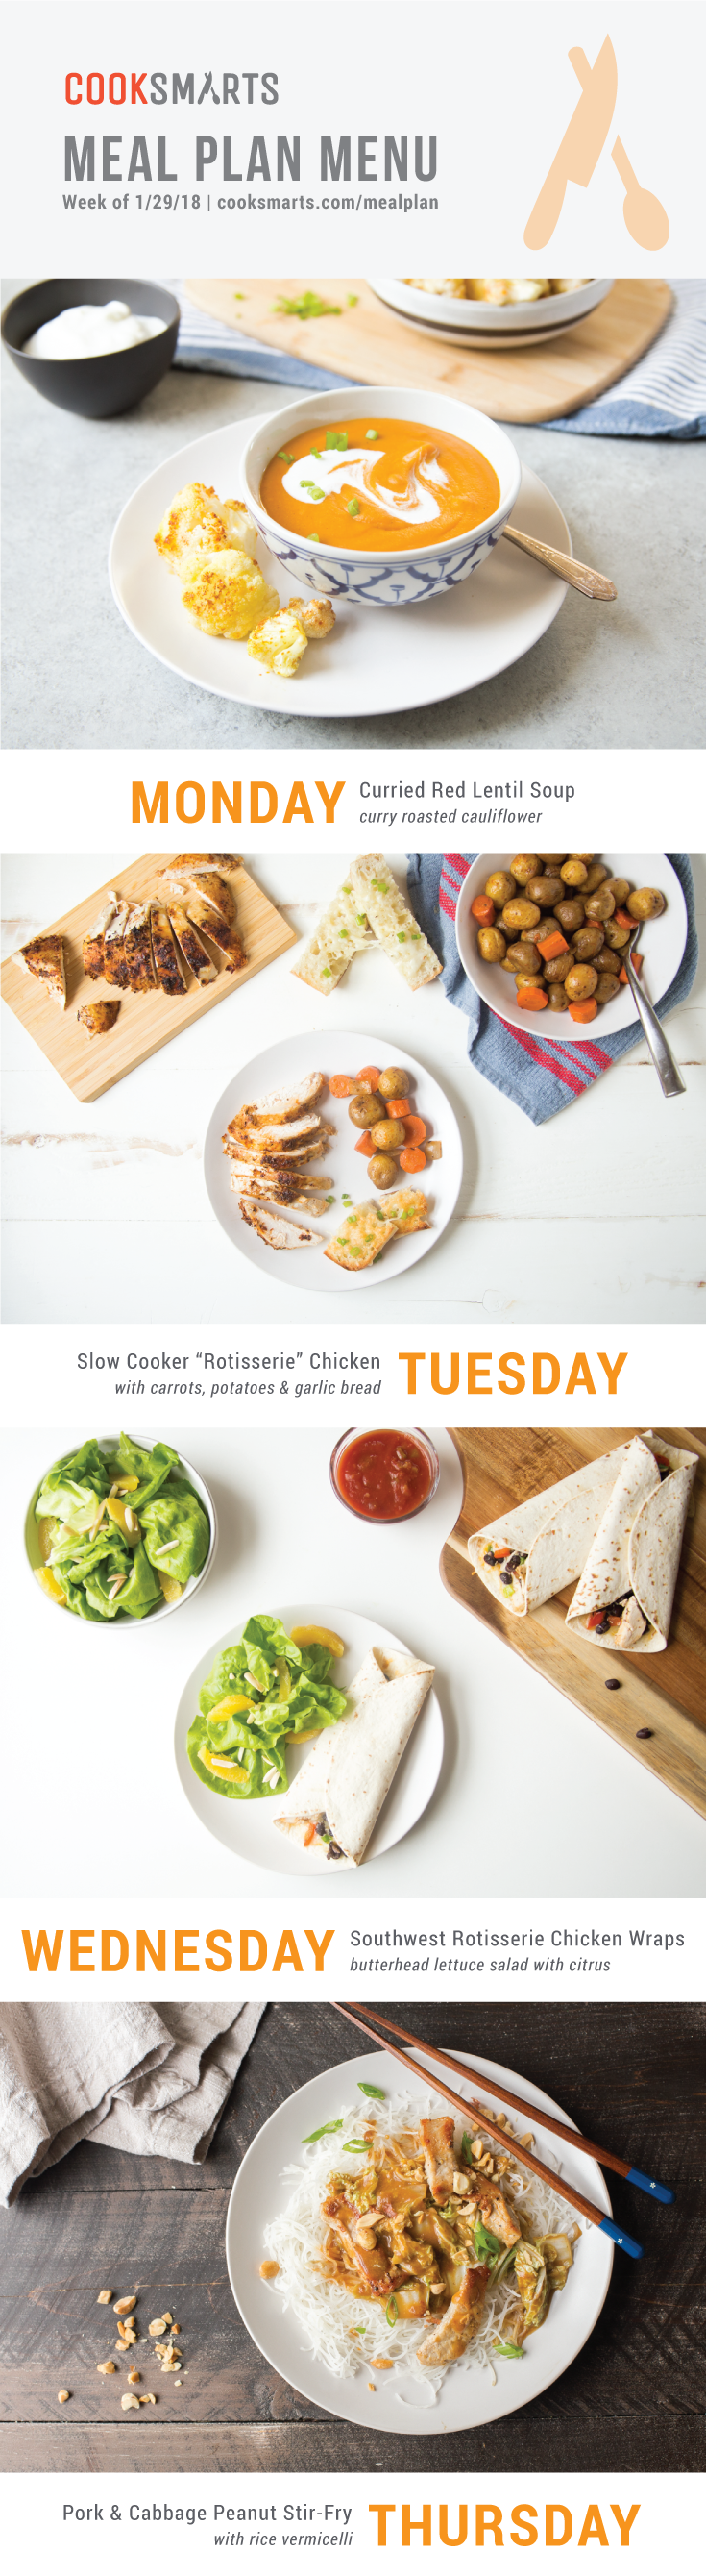 Weekly Meal Plan Menu | Week of 1/29/18 via @cooksmarts